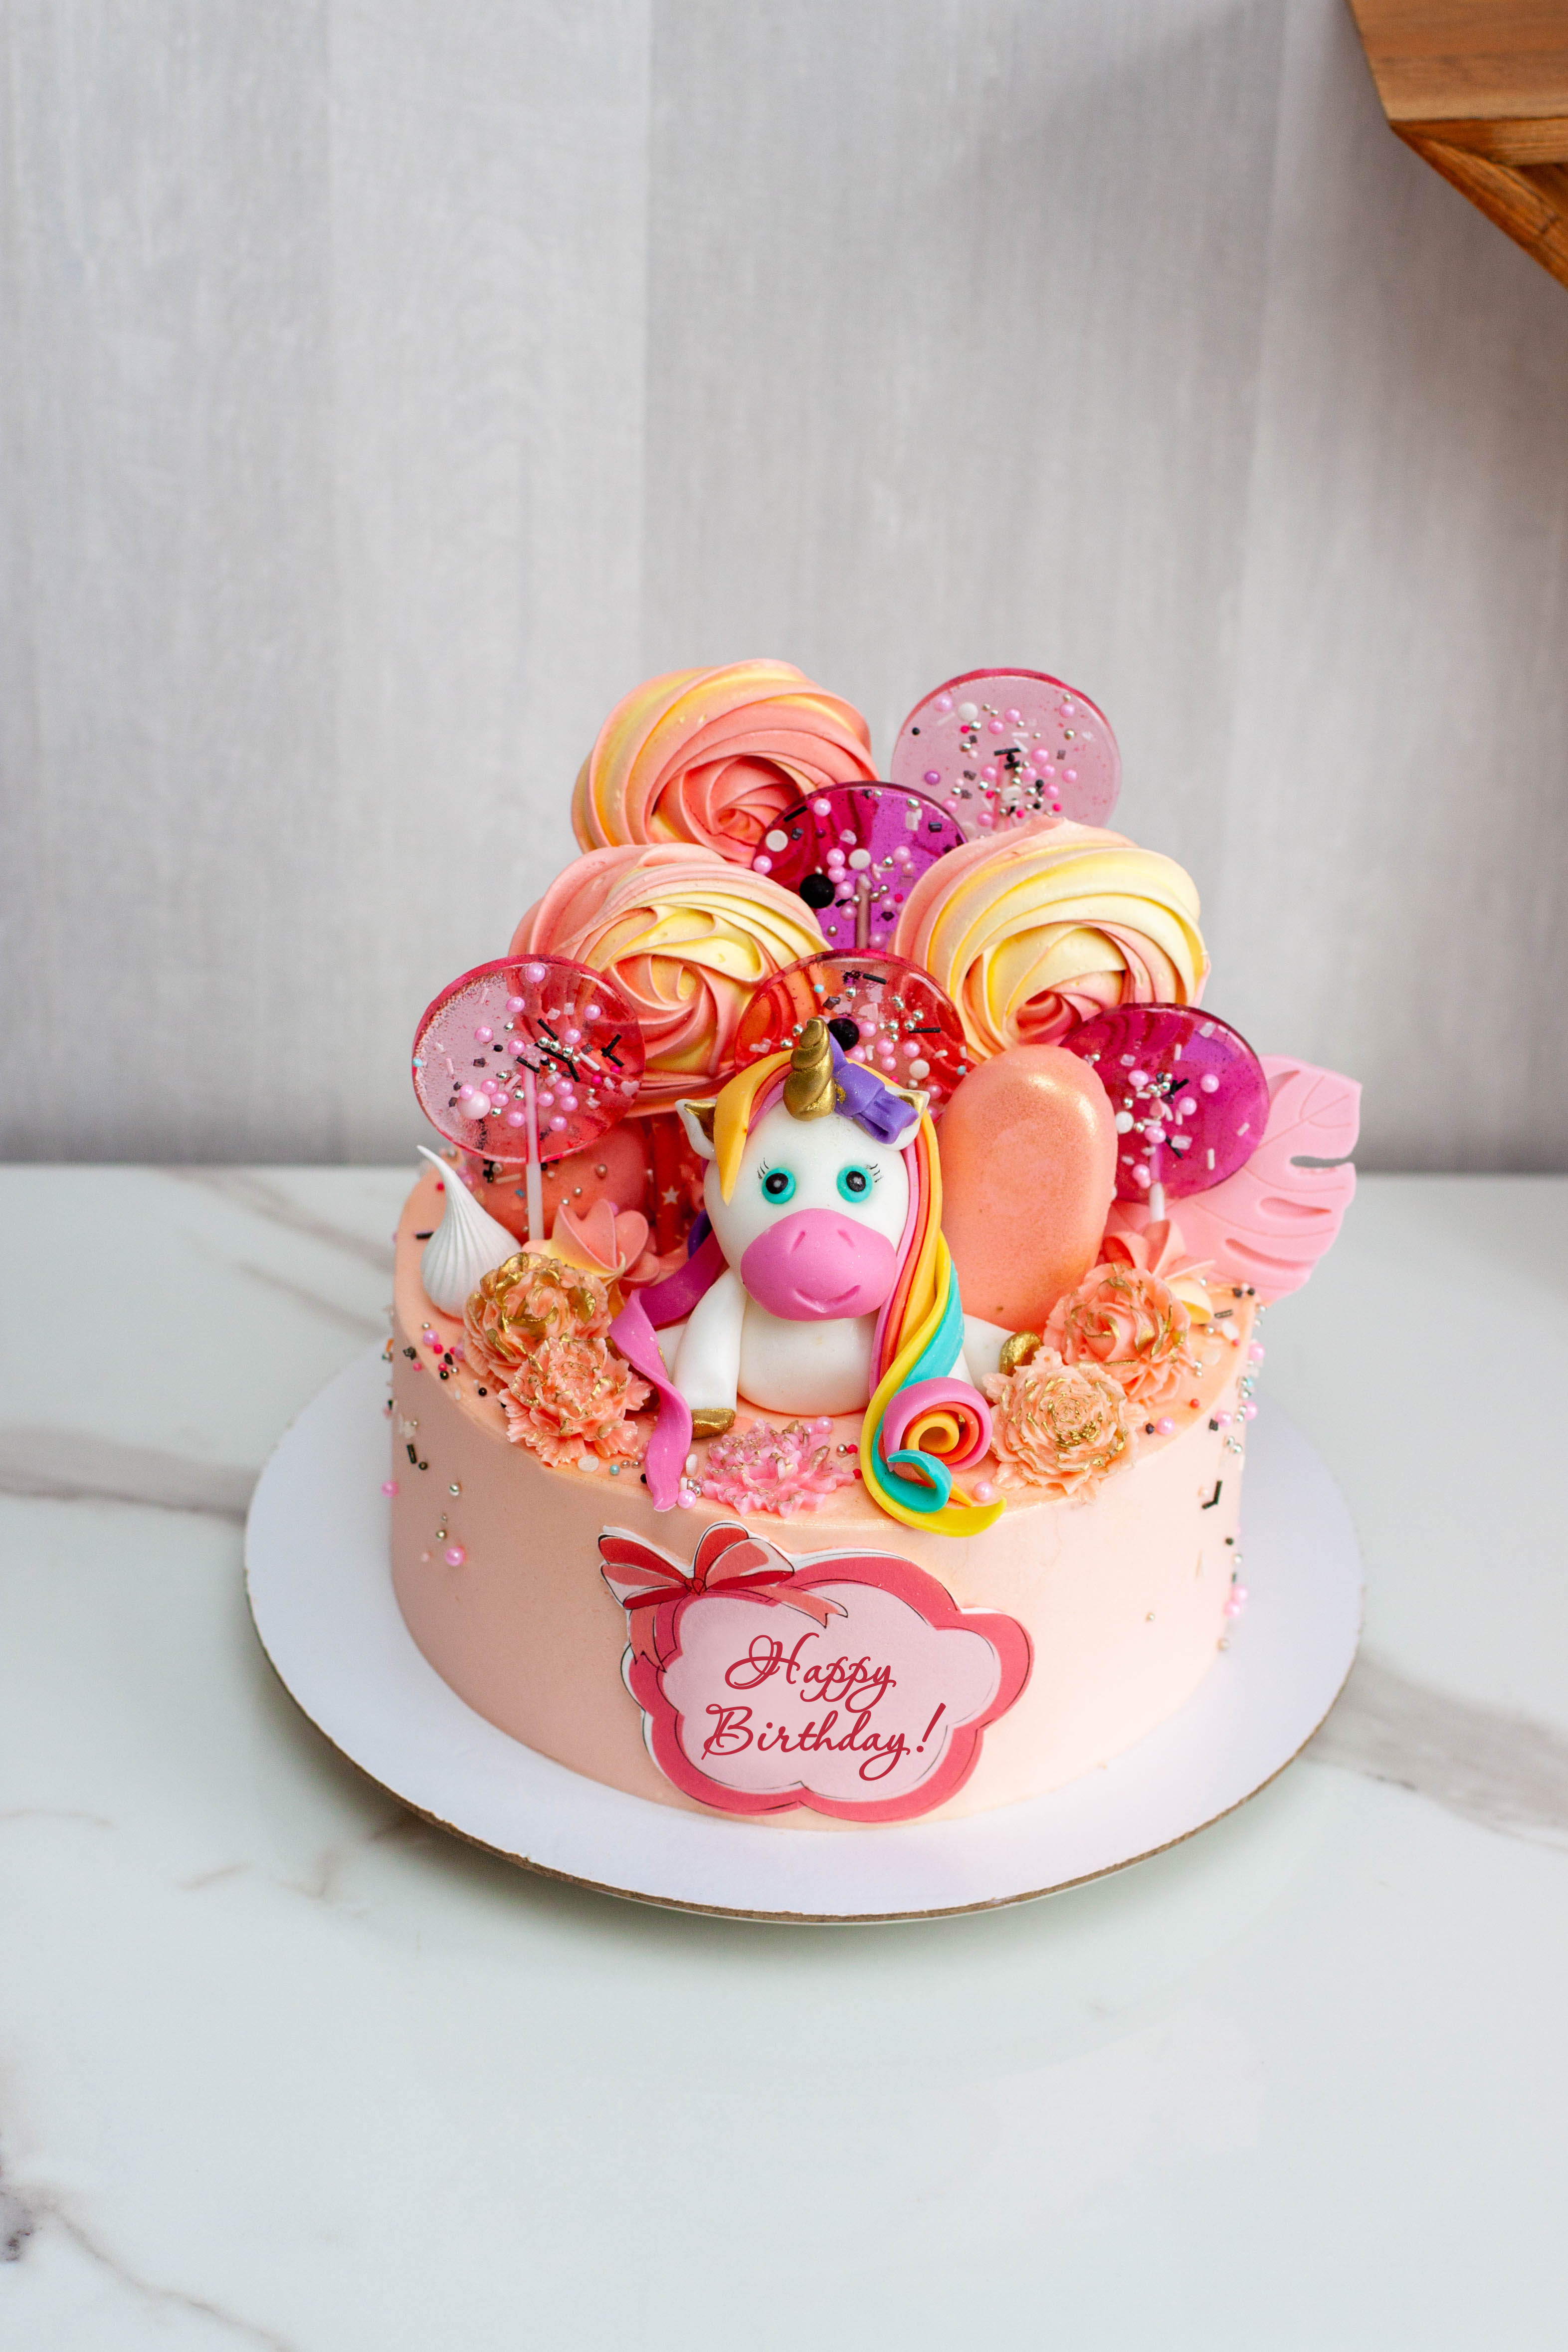 Gâteau d'anniversaire avec une jolie licorne en fondant, des lollipos, des meringues, des popsicles et des fleurs en chocolat pour une fille ou un bébé. Texte Joyeux anniversaire | Source : Getty Images